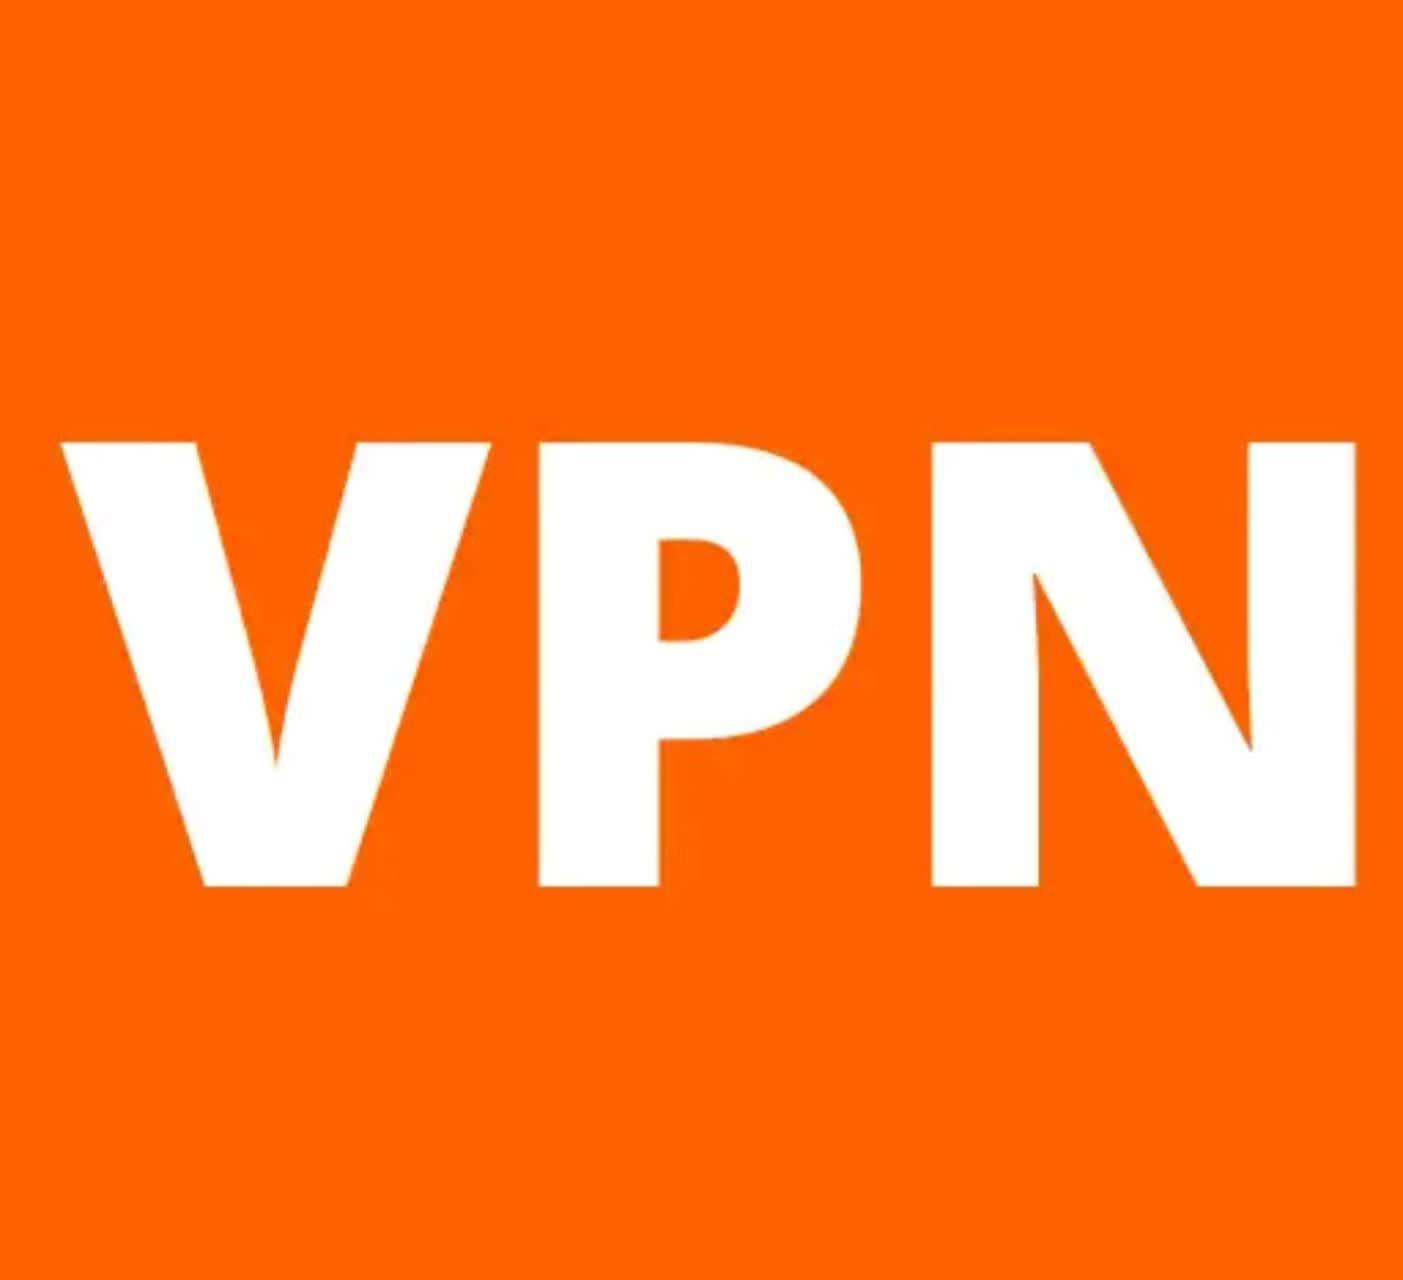 دانلود فیلتر شکن پرسرعت Vpn App 2022 نسخه جدید